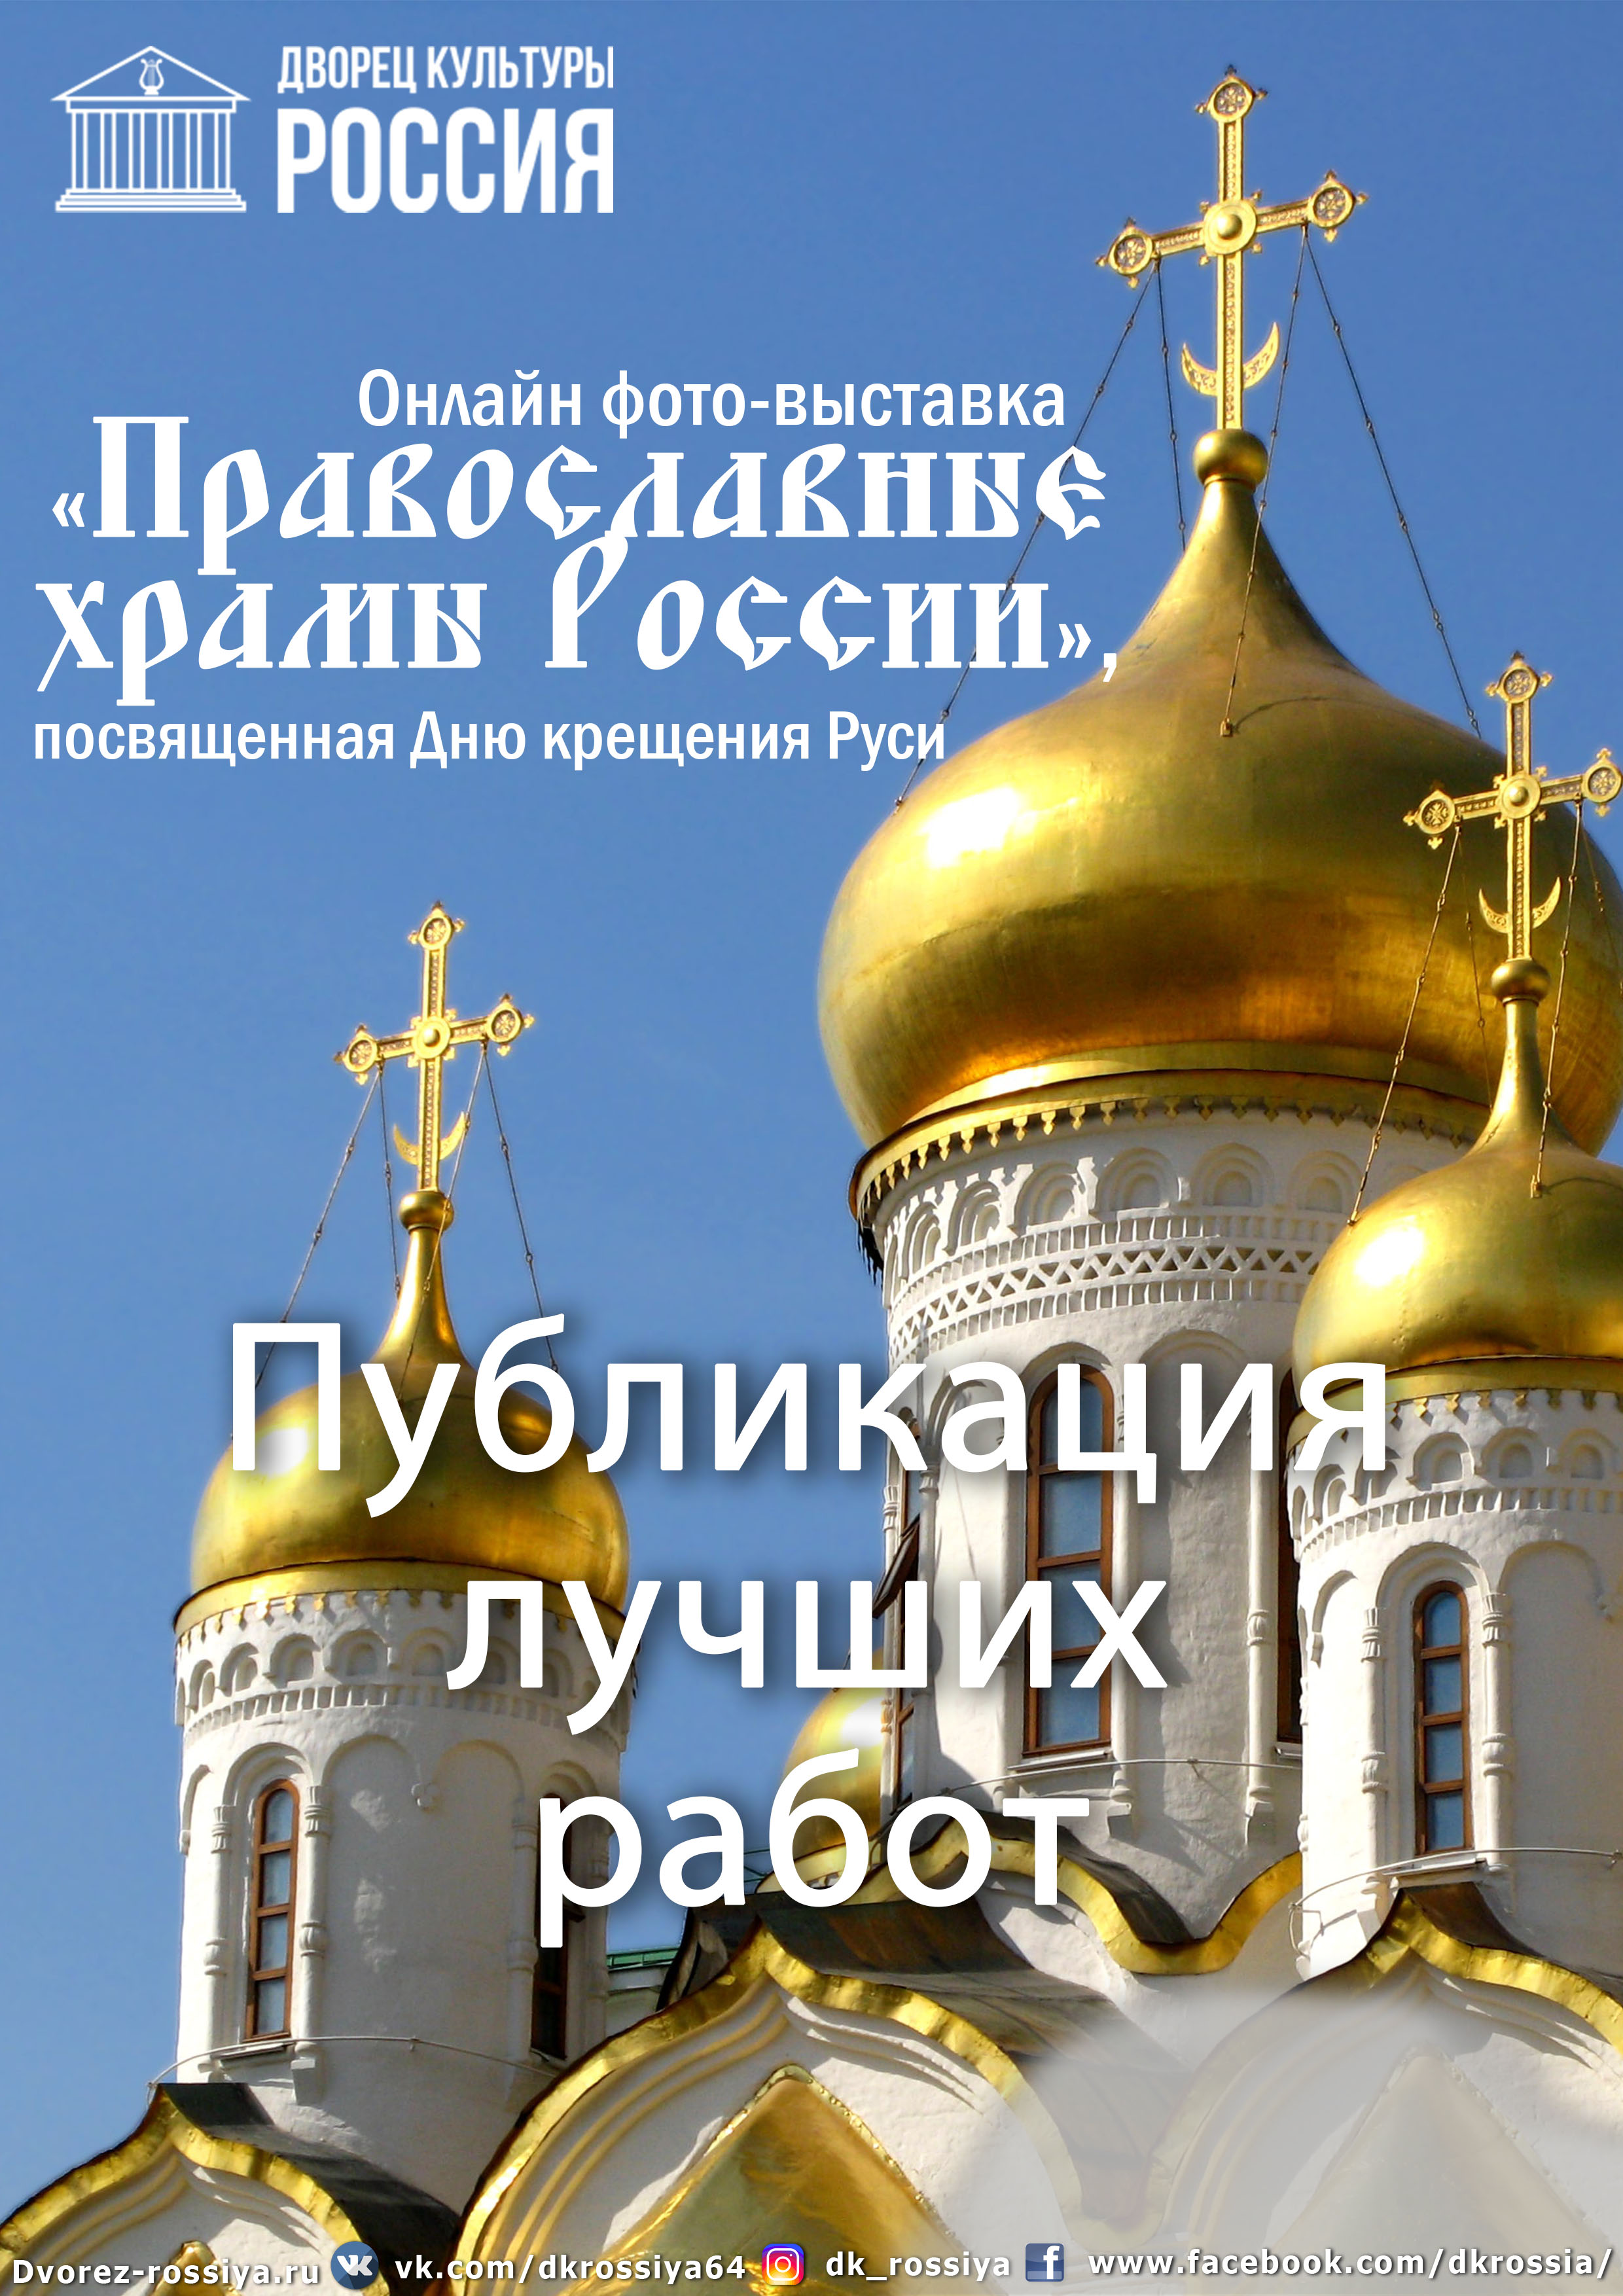 Публикация лучших работ. Онлайн фото-выставка «Православные храмы России».